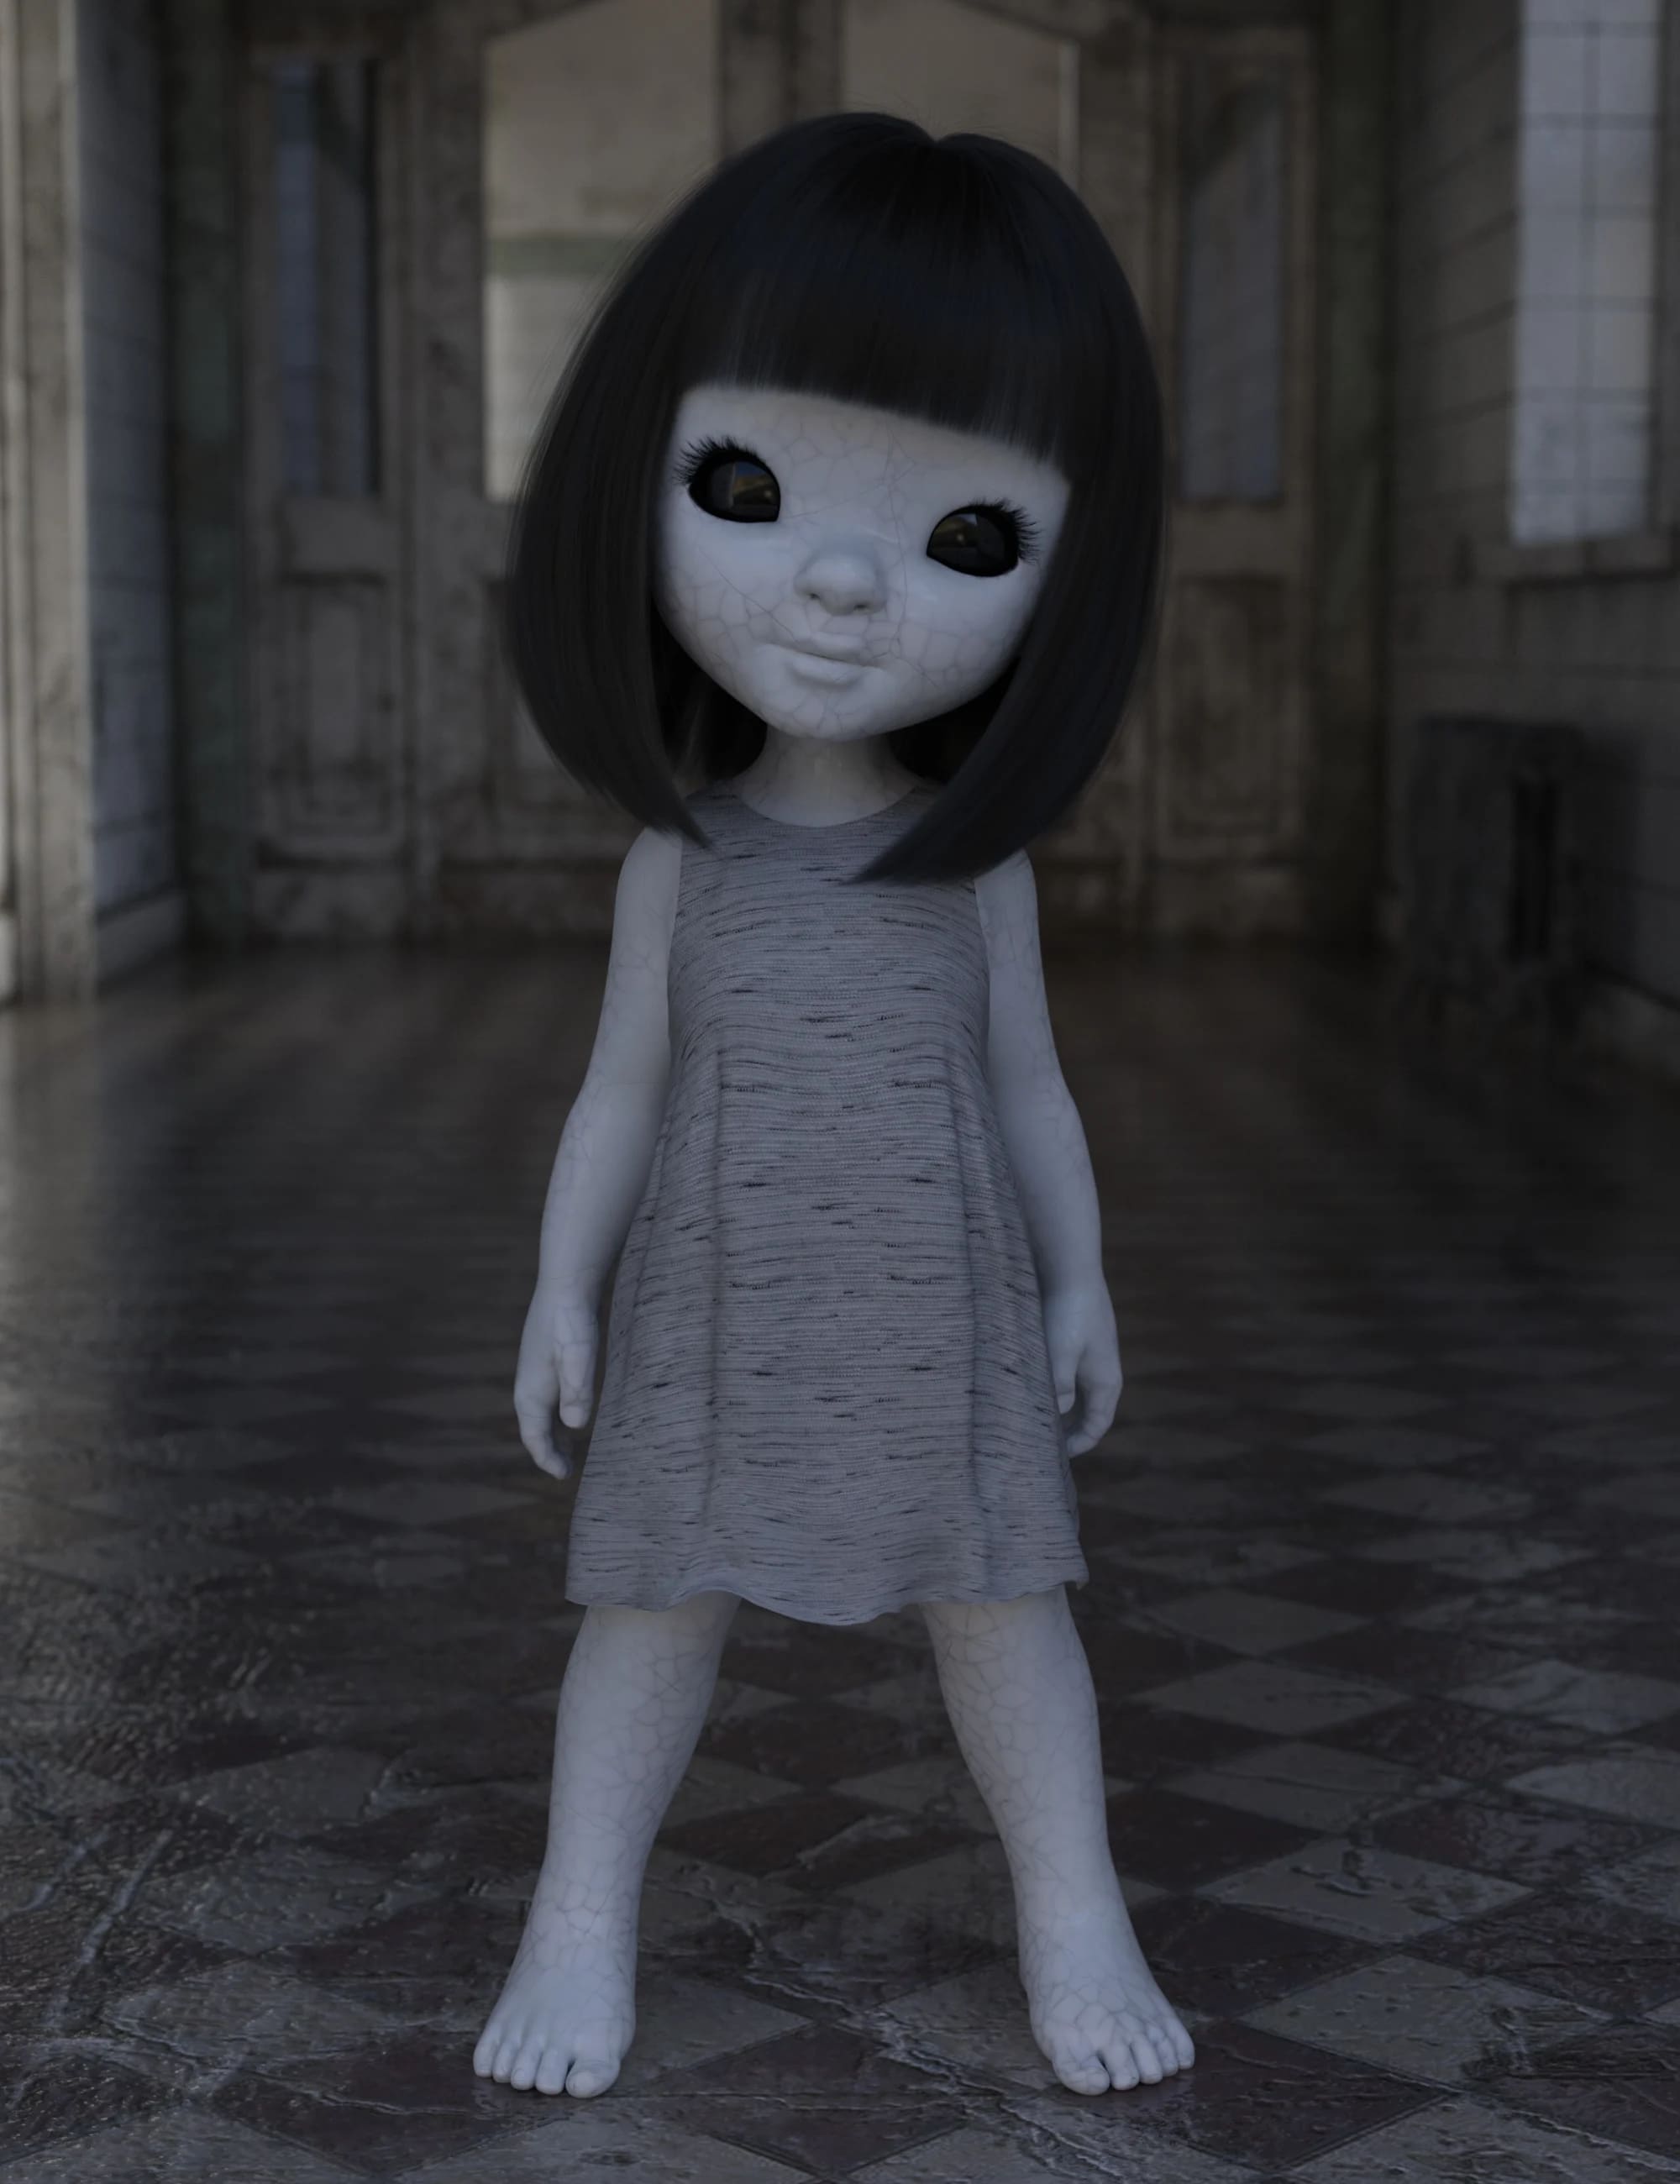 Spooky Doll Textures for Bugga Boo_DAZ3D下载站